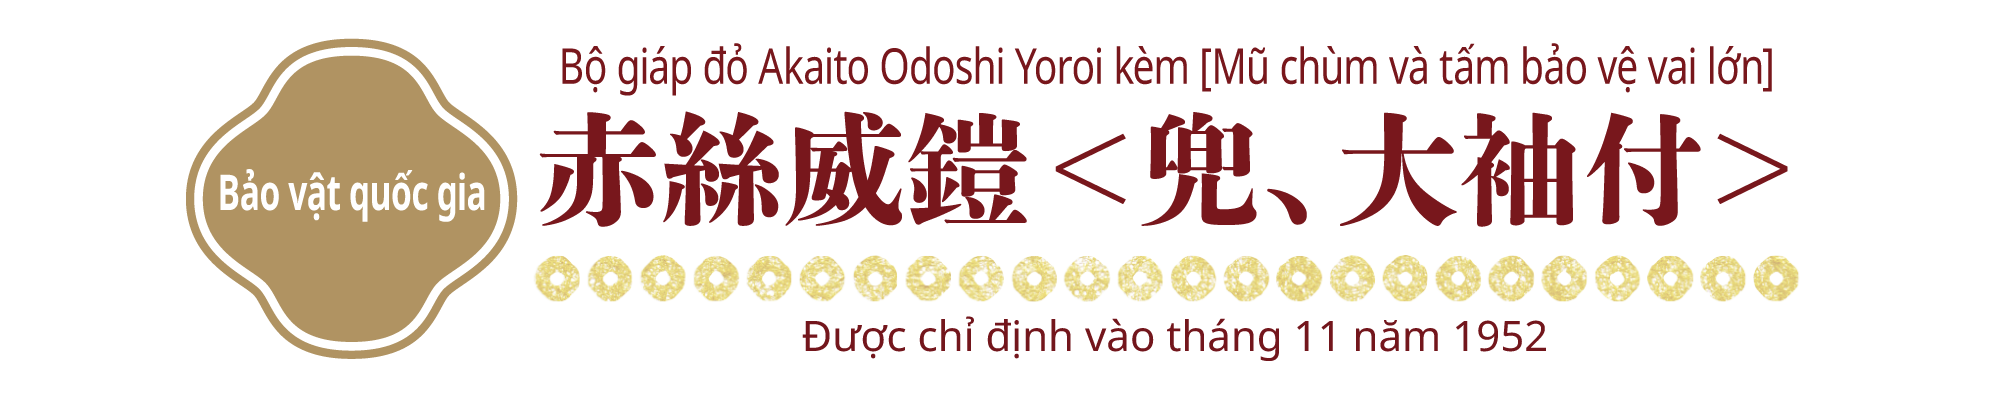 [Bảo vật quốc gia]Bộ giáp đỏ Akaito Odoshi Yoroi kèm [Mũ chùm và tấm bảo vệ vai lớn], Được chỉ định vào tháng 11 năm 1952